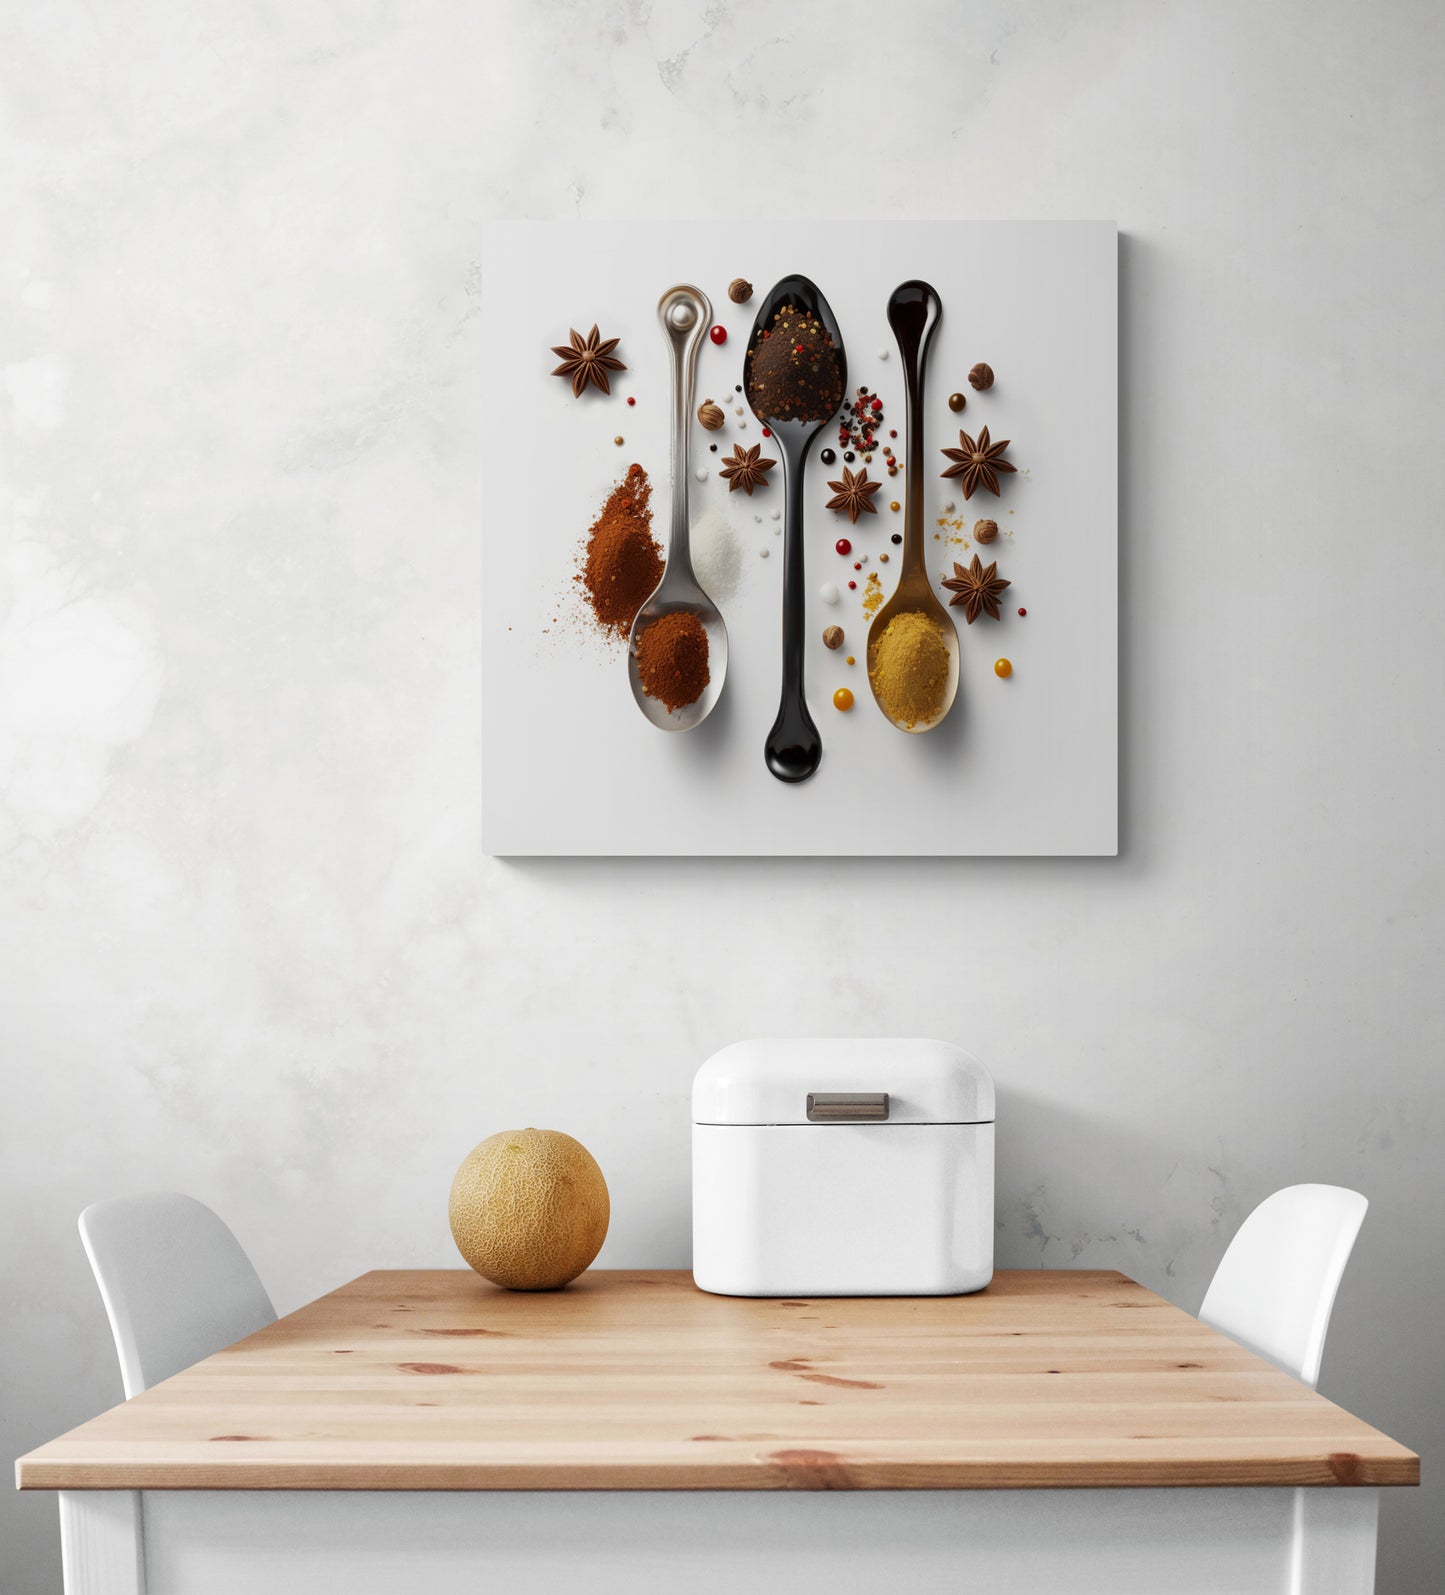 Sur un mur blanc de cuisine, une photo de trois cuillères est suspendue. Ces cuillères sont parsemées d'épices orientales et des étoiles d'anis les entourent. En dessous de cette photo se trouve une table blanche et deux chaises, sur laquelle sont posés une corbeille à pain et un melon.